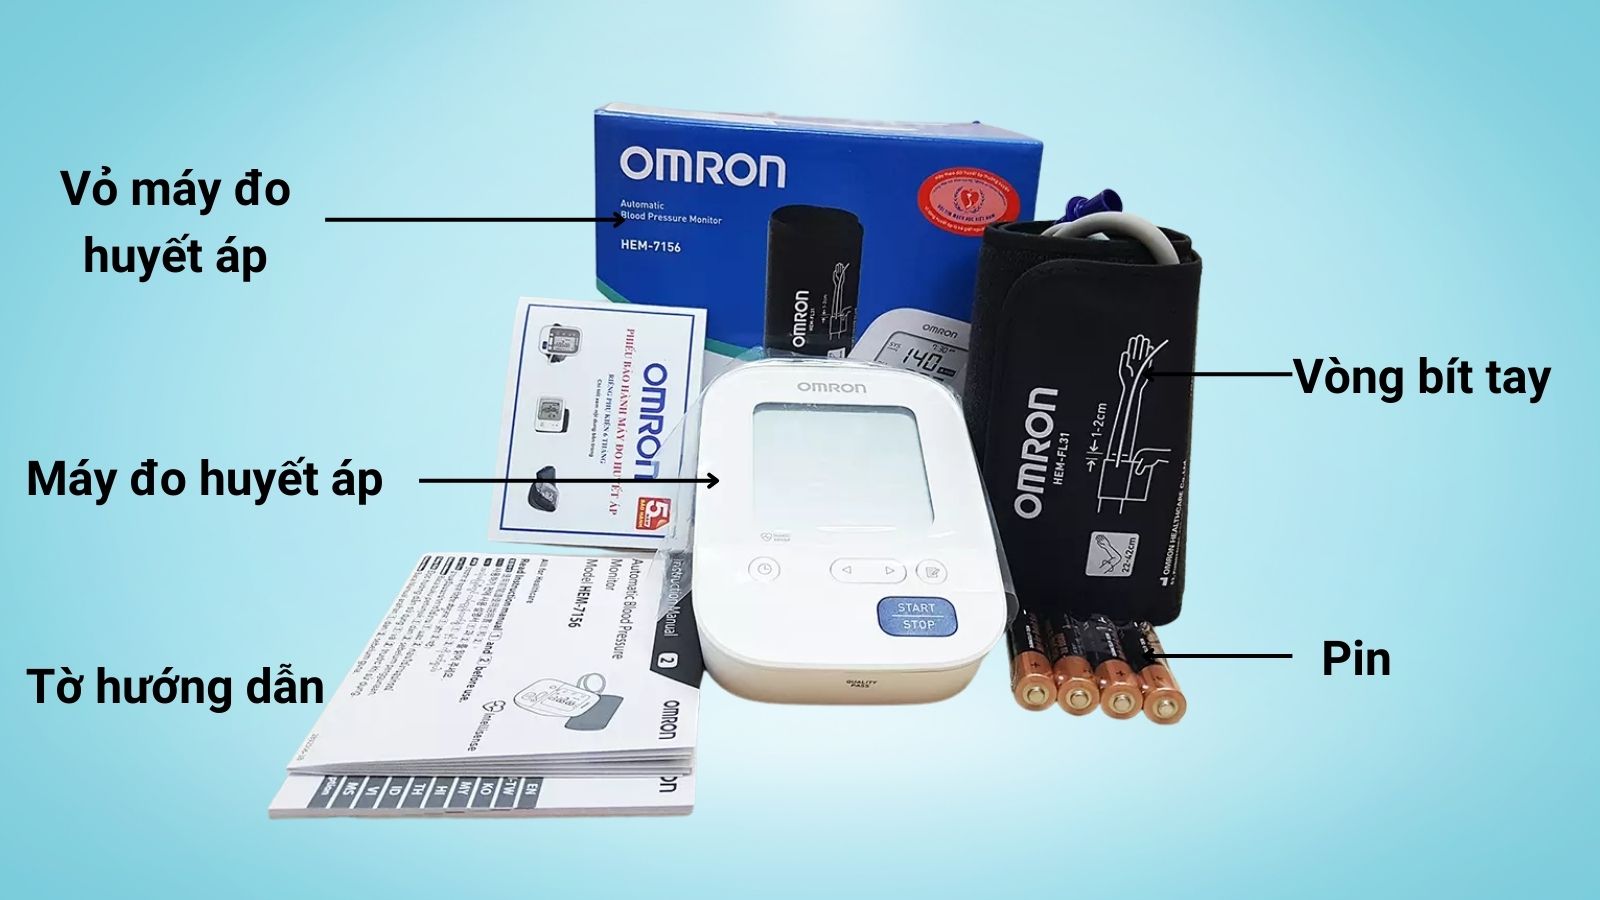 Máy đo huyết áp Omron HEM 7156 có bao gồm các thiết bị đi kèm